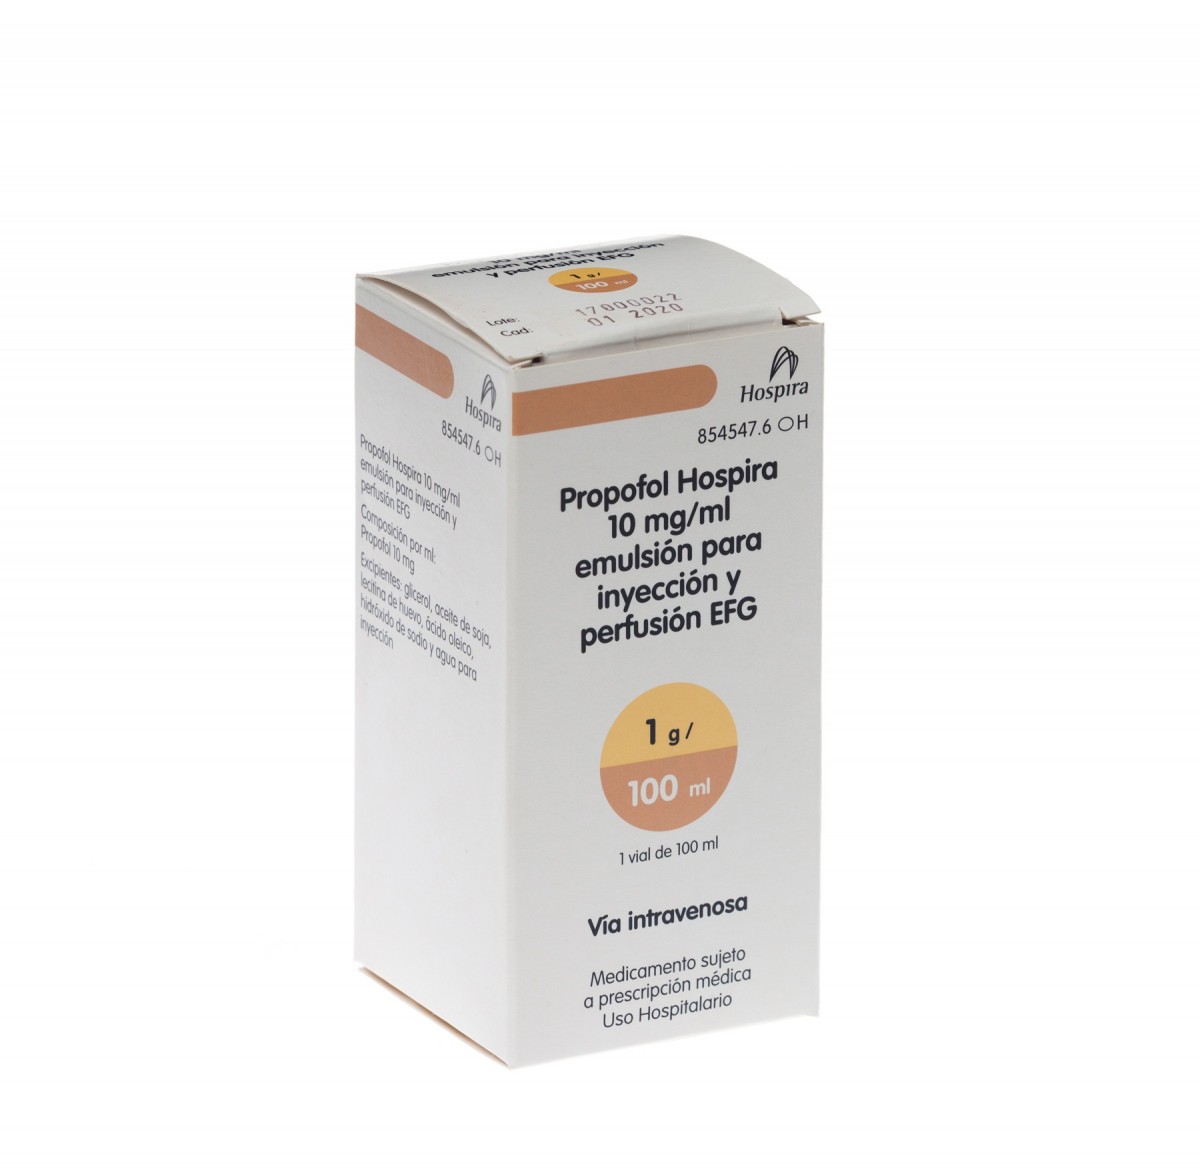 PROPOFOL HOSPIRA 10 mg/ml EMULSION PARA INYECCION Y PERFUSION EFG, 1 vial de 50 ml fotografía del envase.